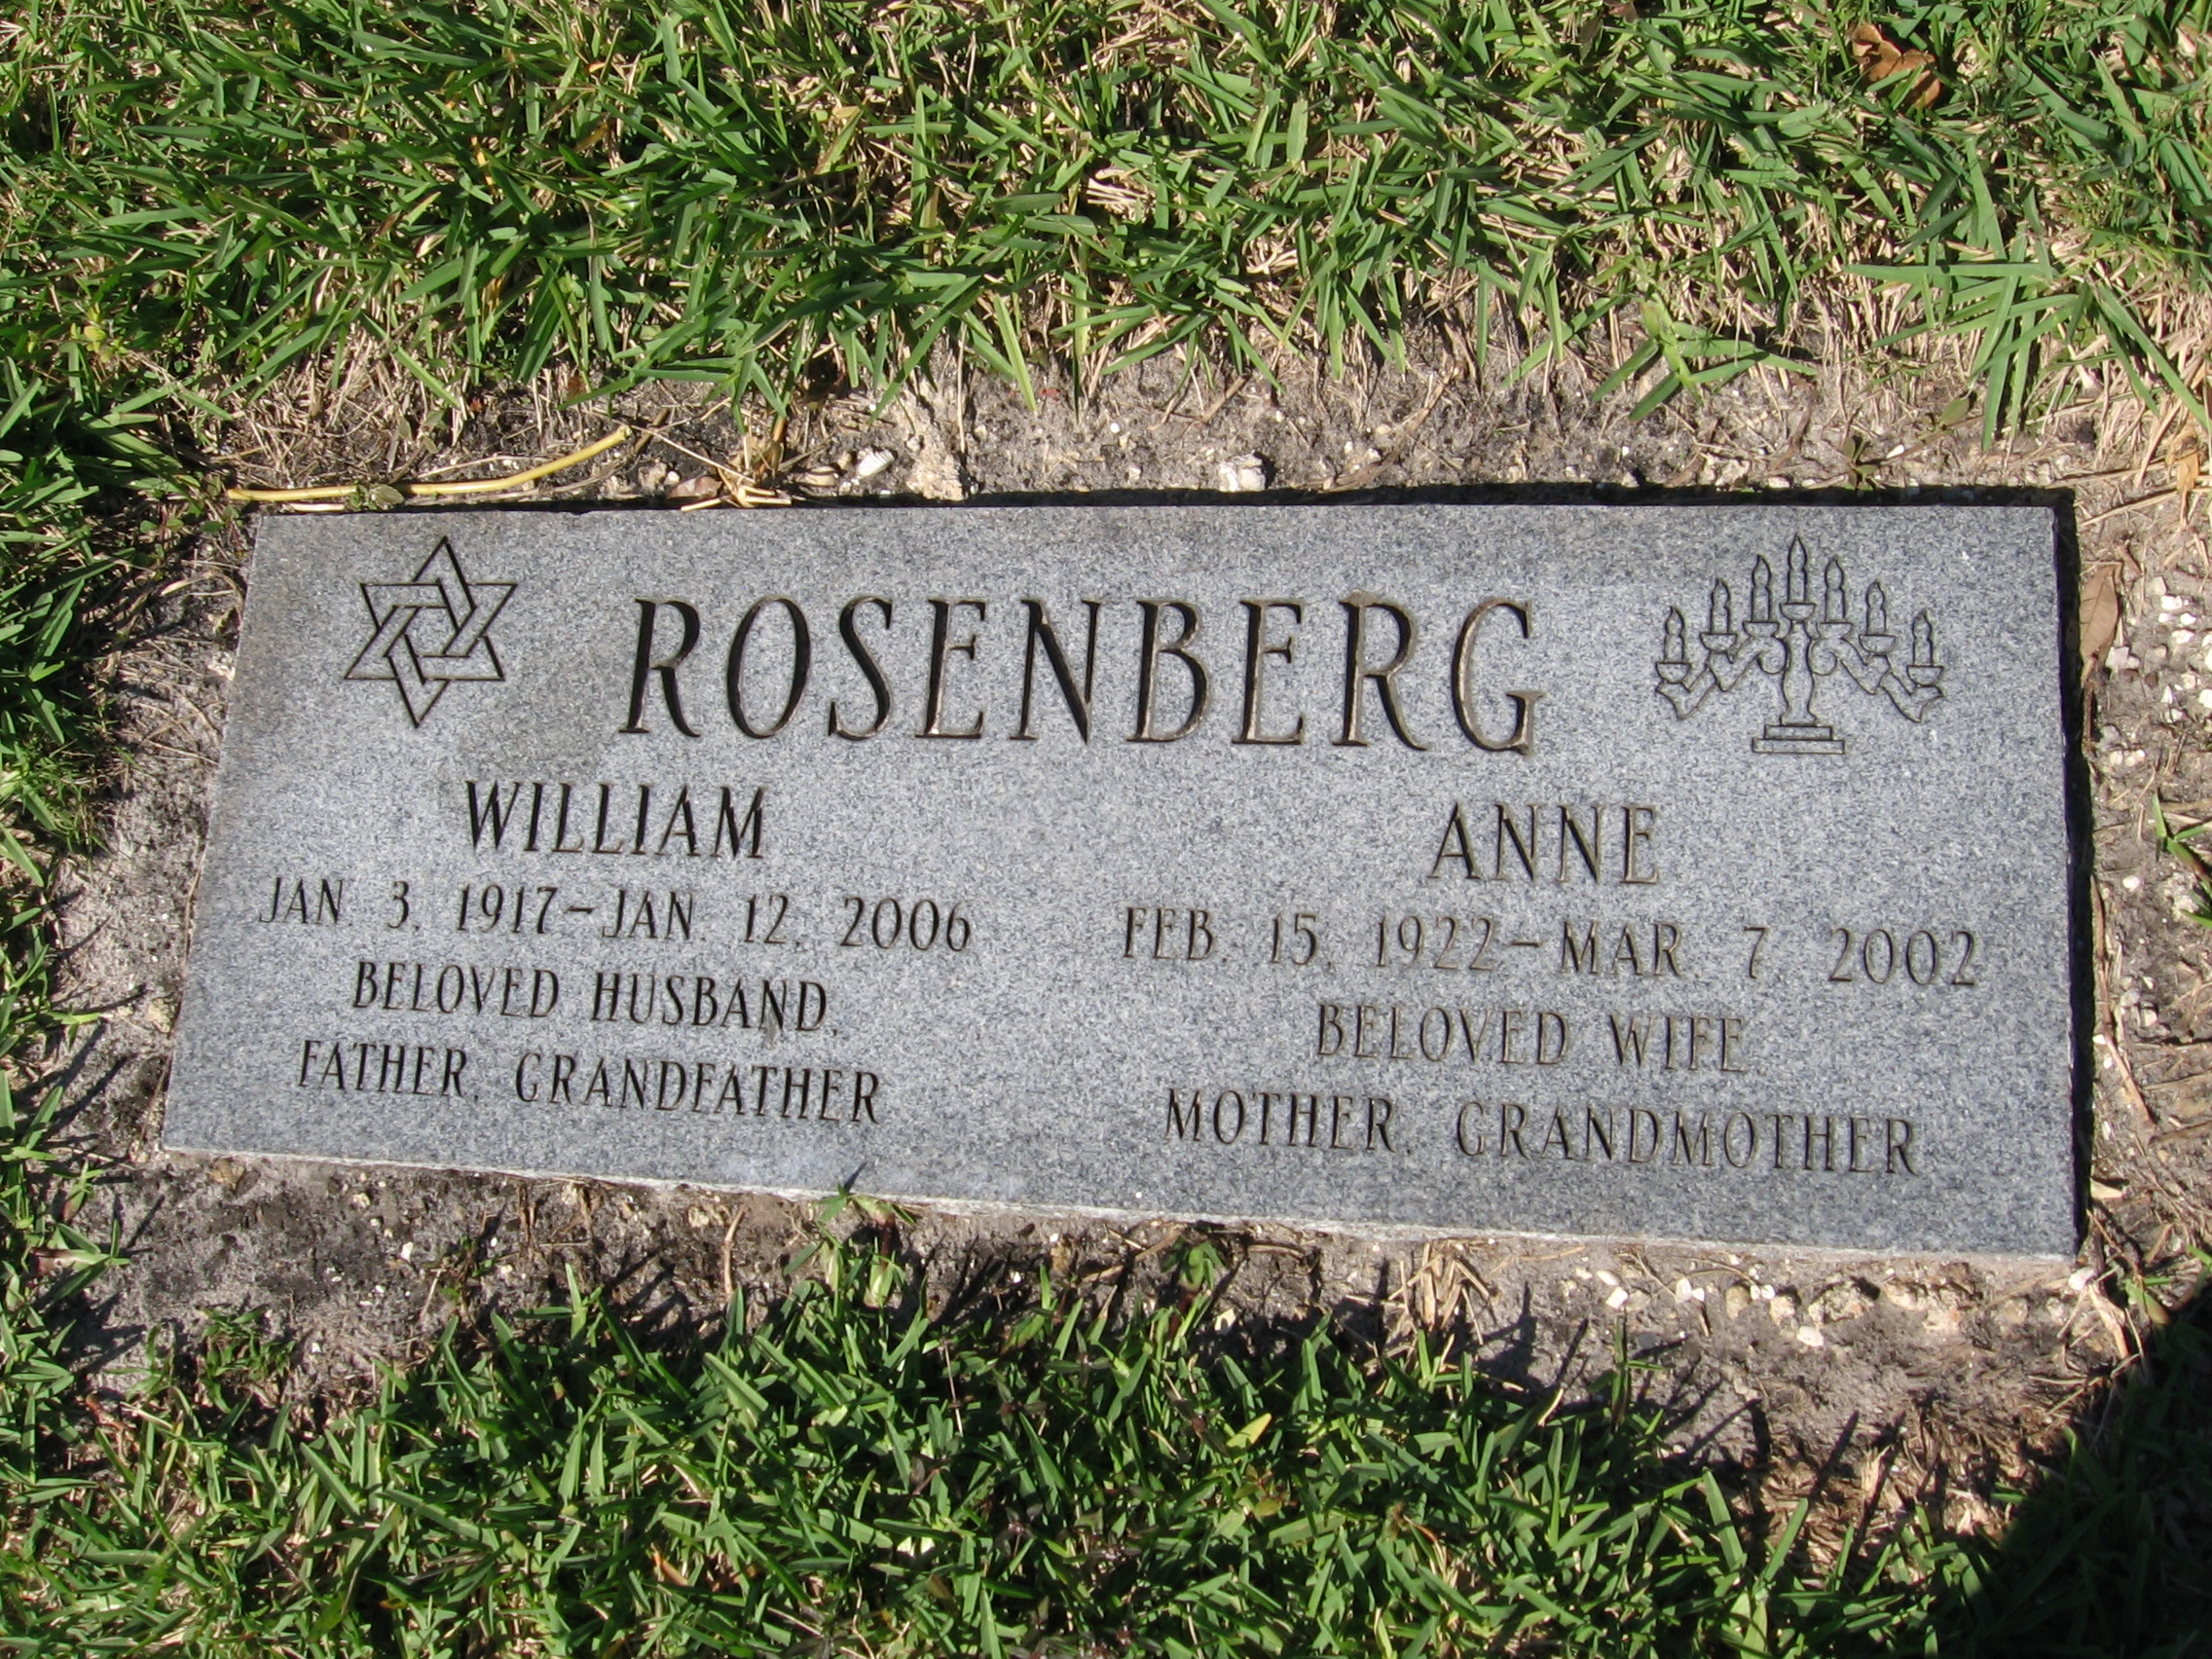 William Rosenberg